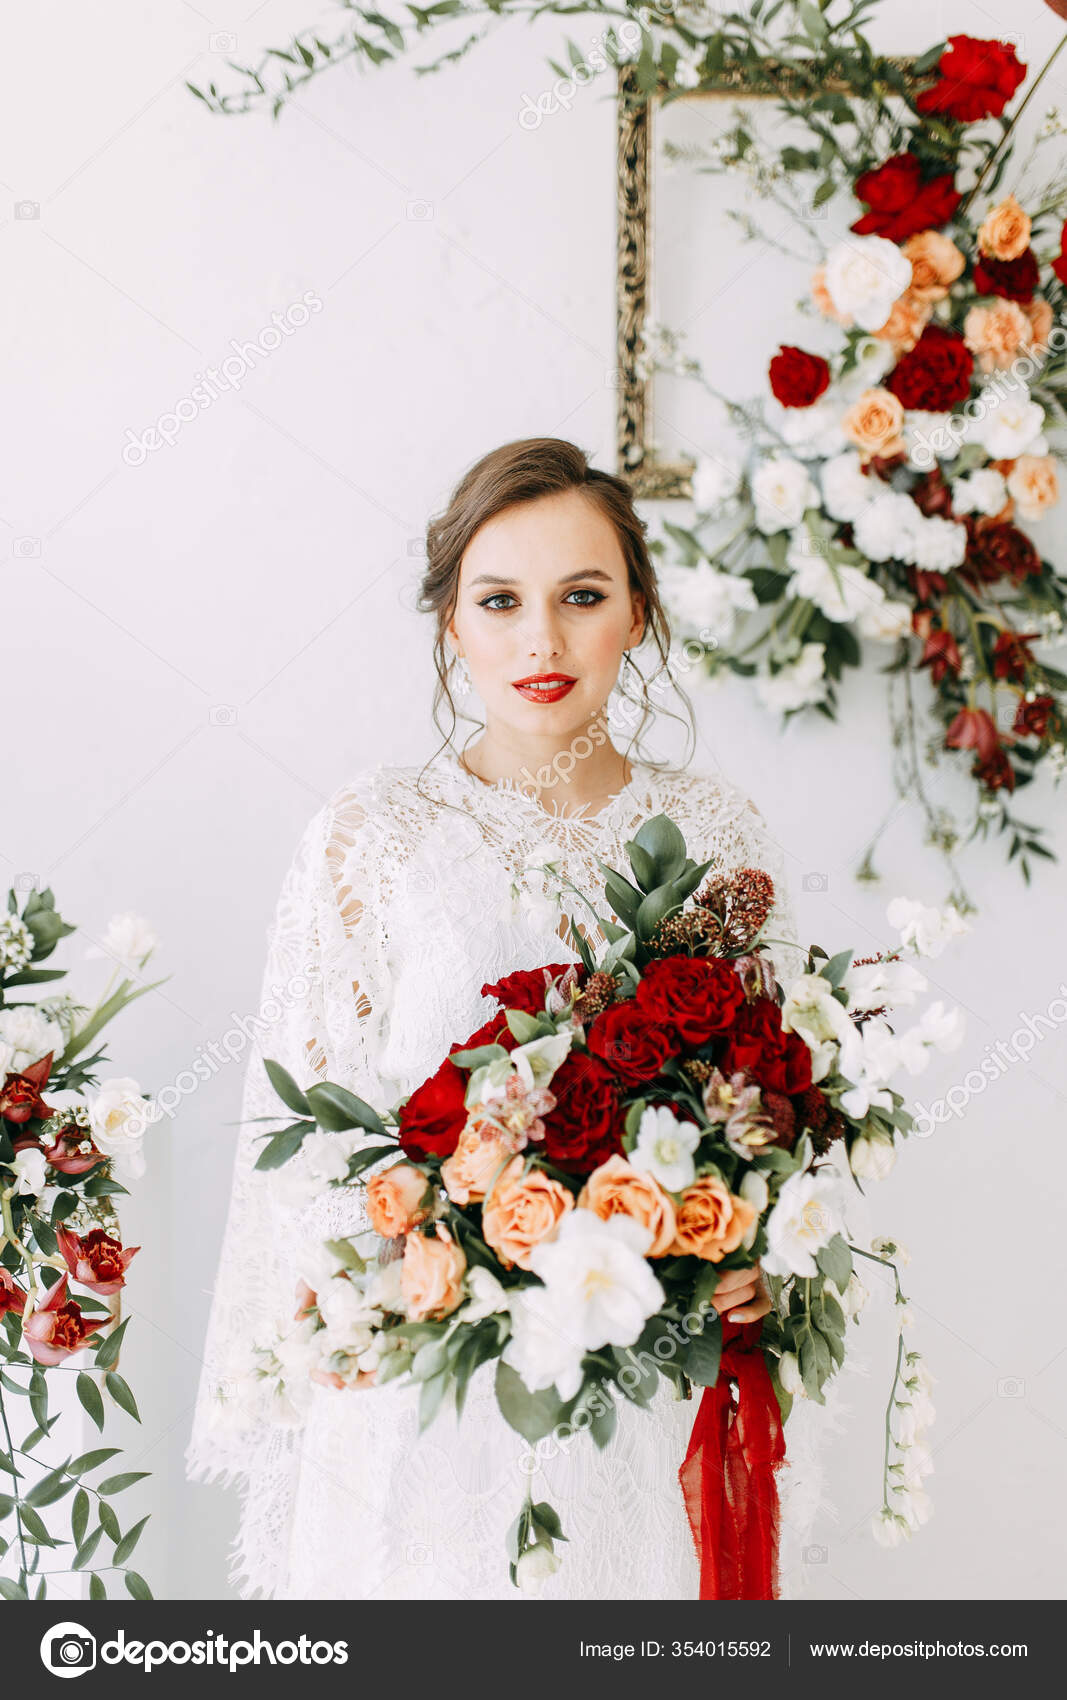 vestido de noiva com rosas vermelhas